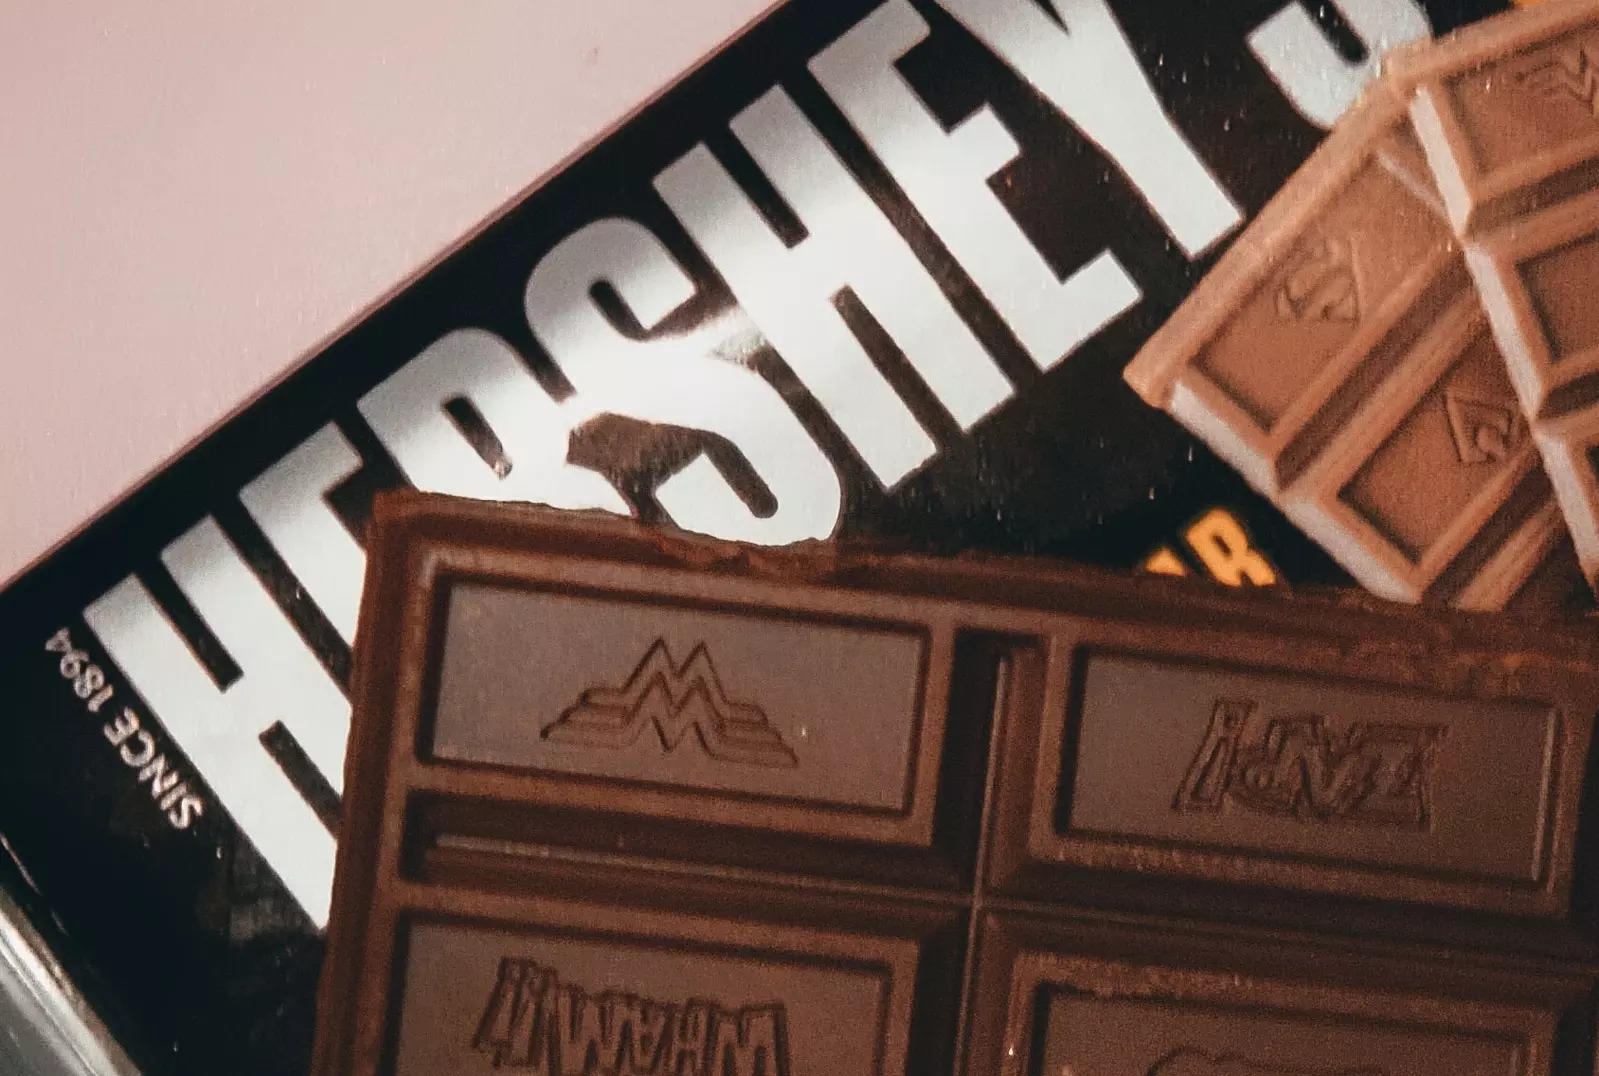 Hershey sued in US over metal in dark chocolate claim